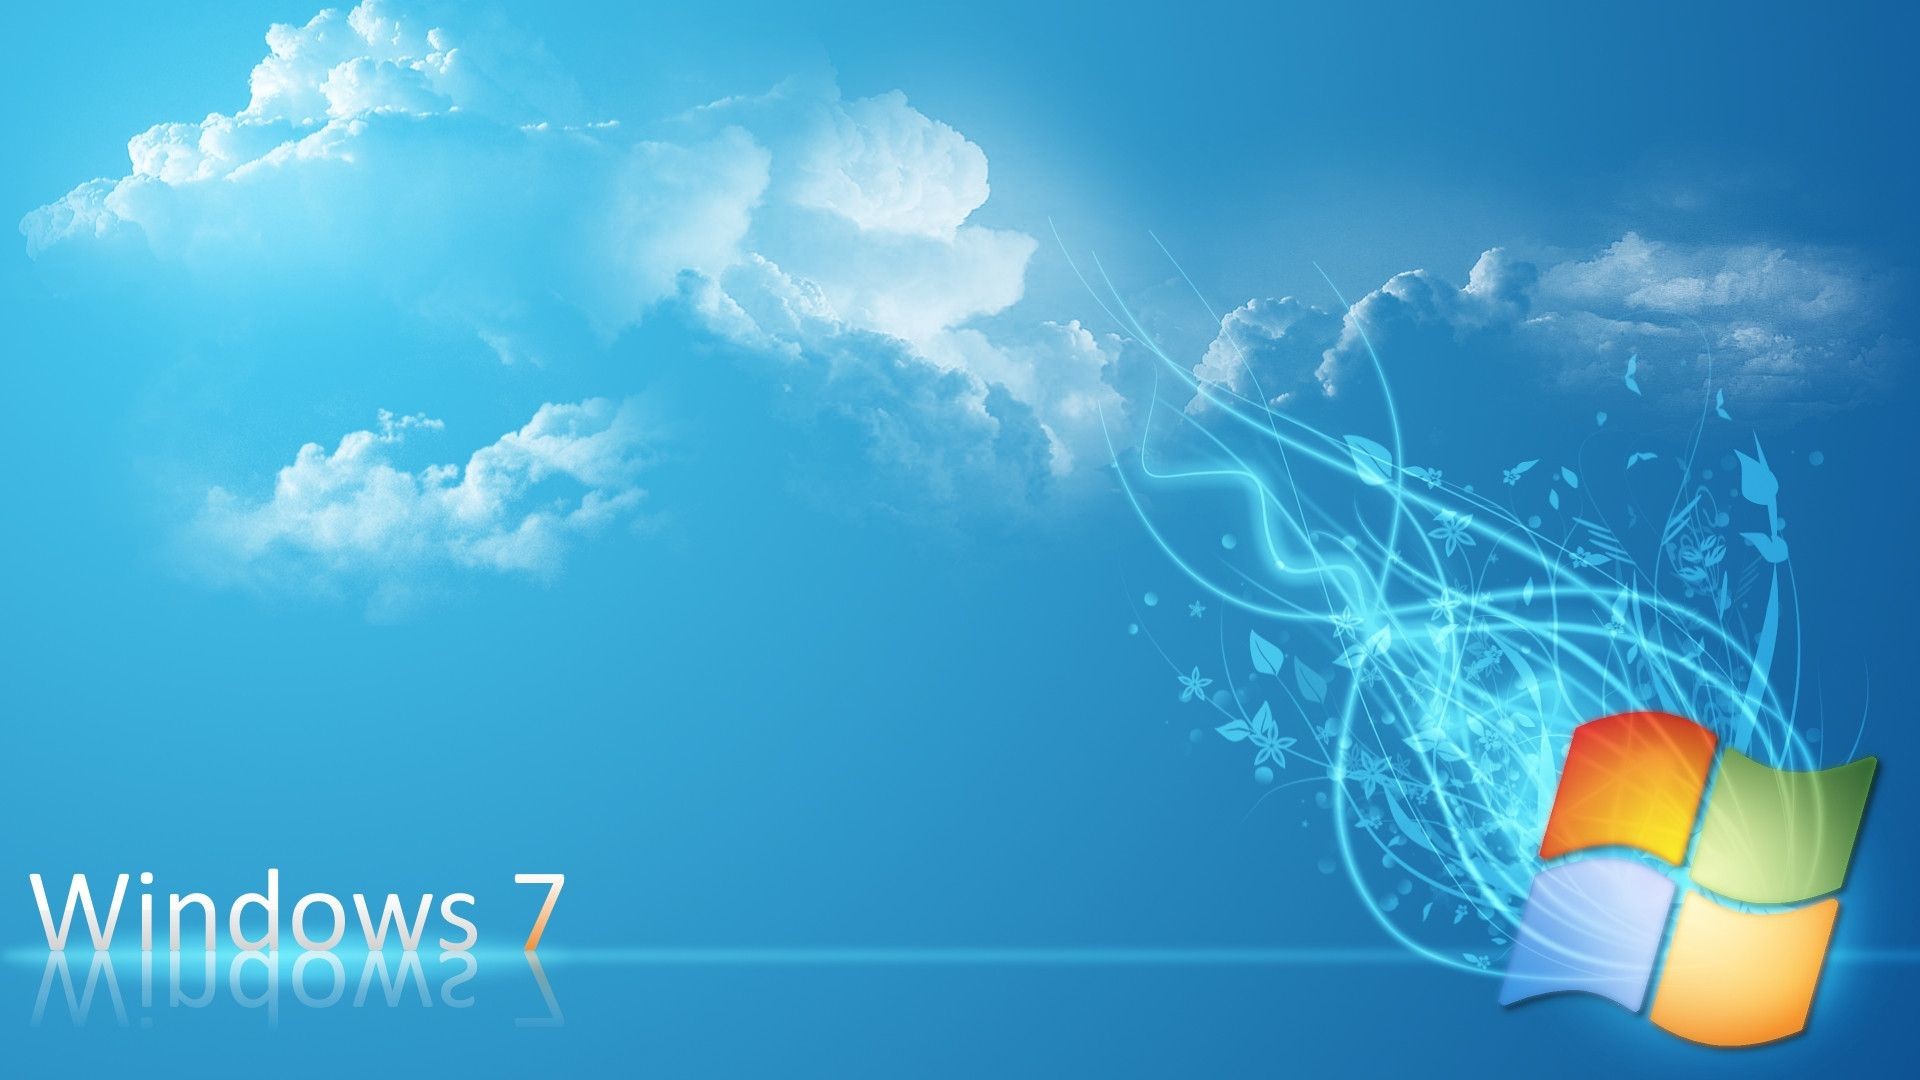 Windows 7 Ultimate Desktop Background (56+ images)